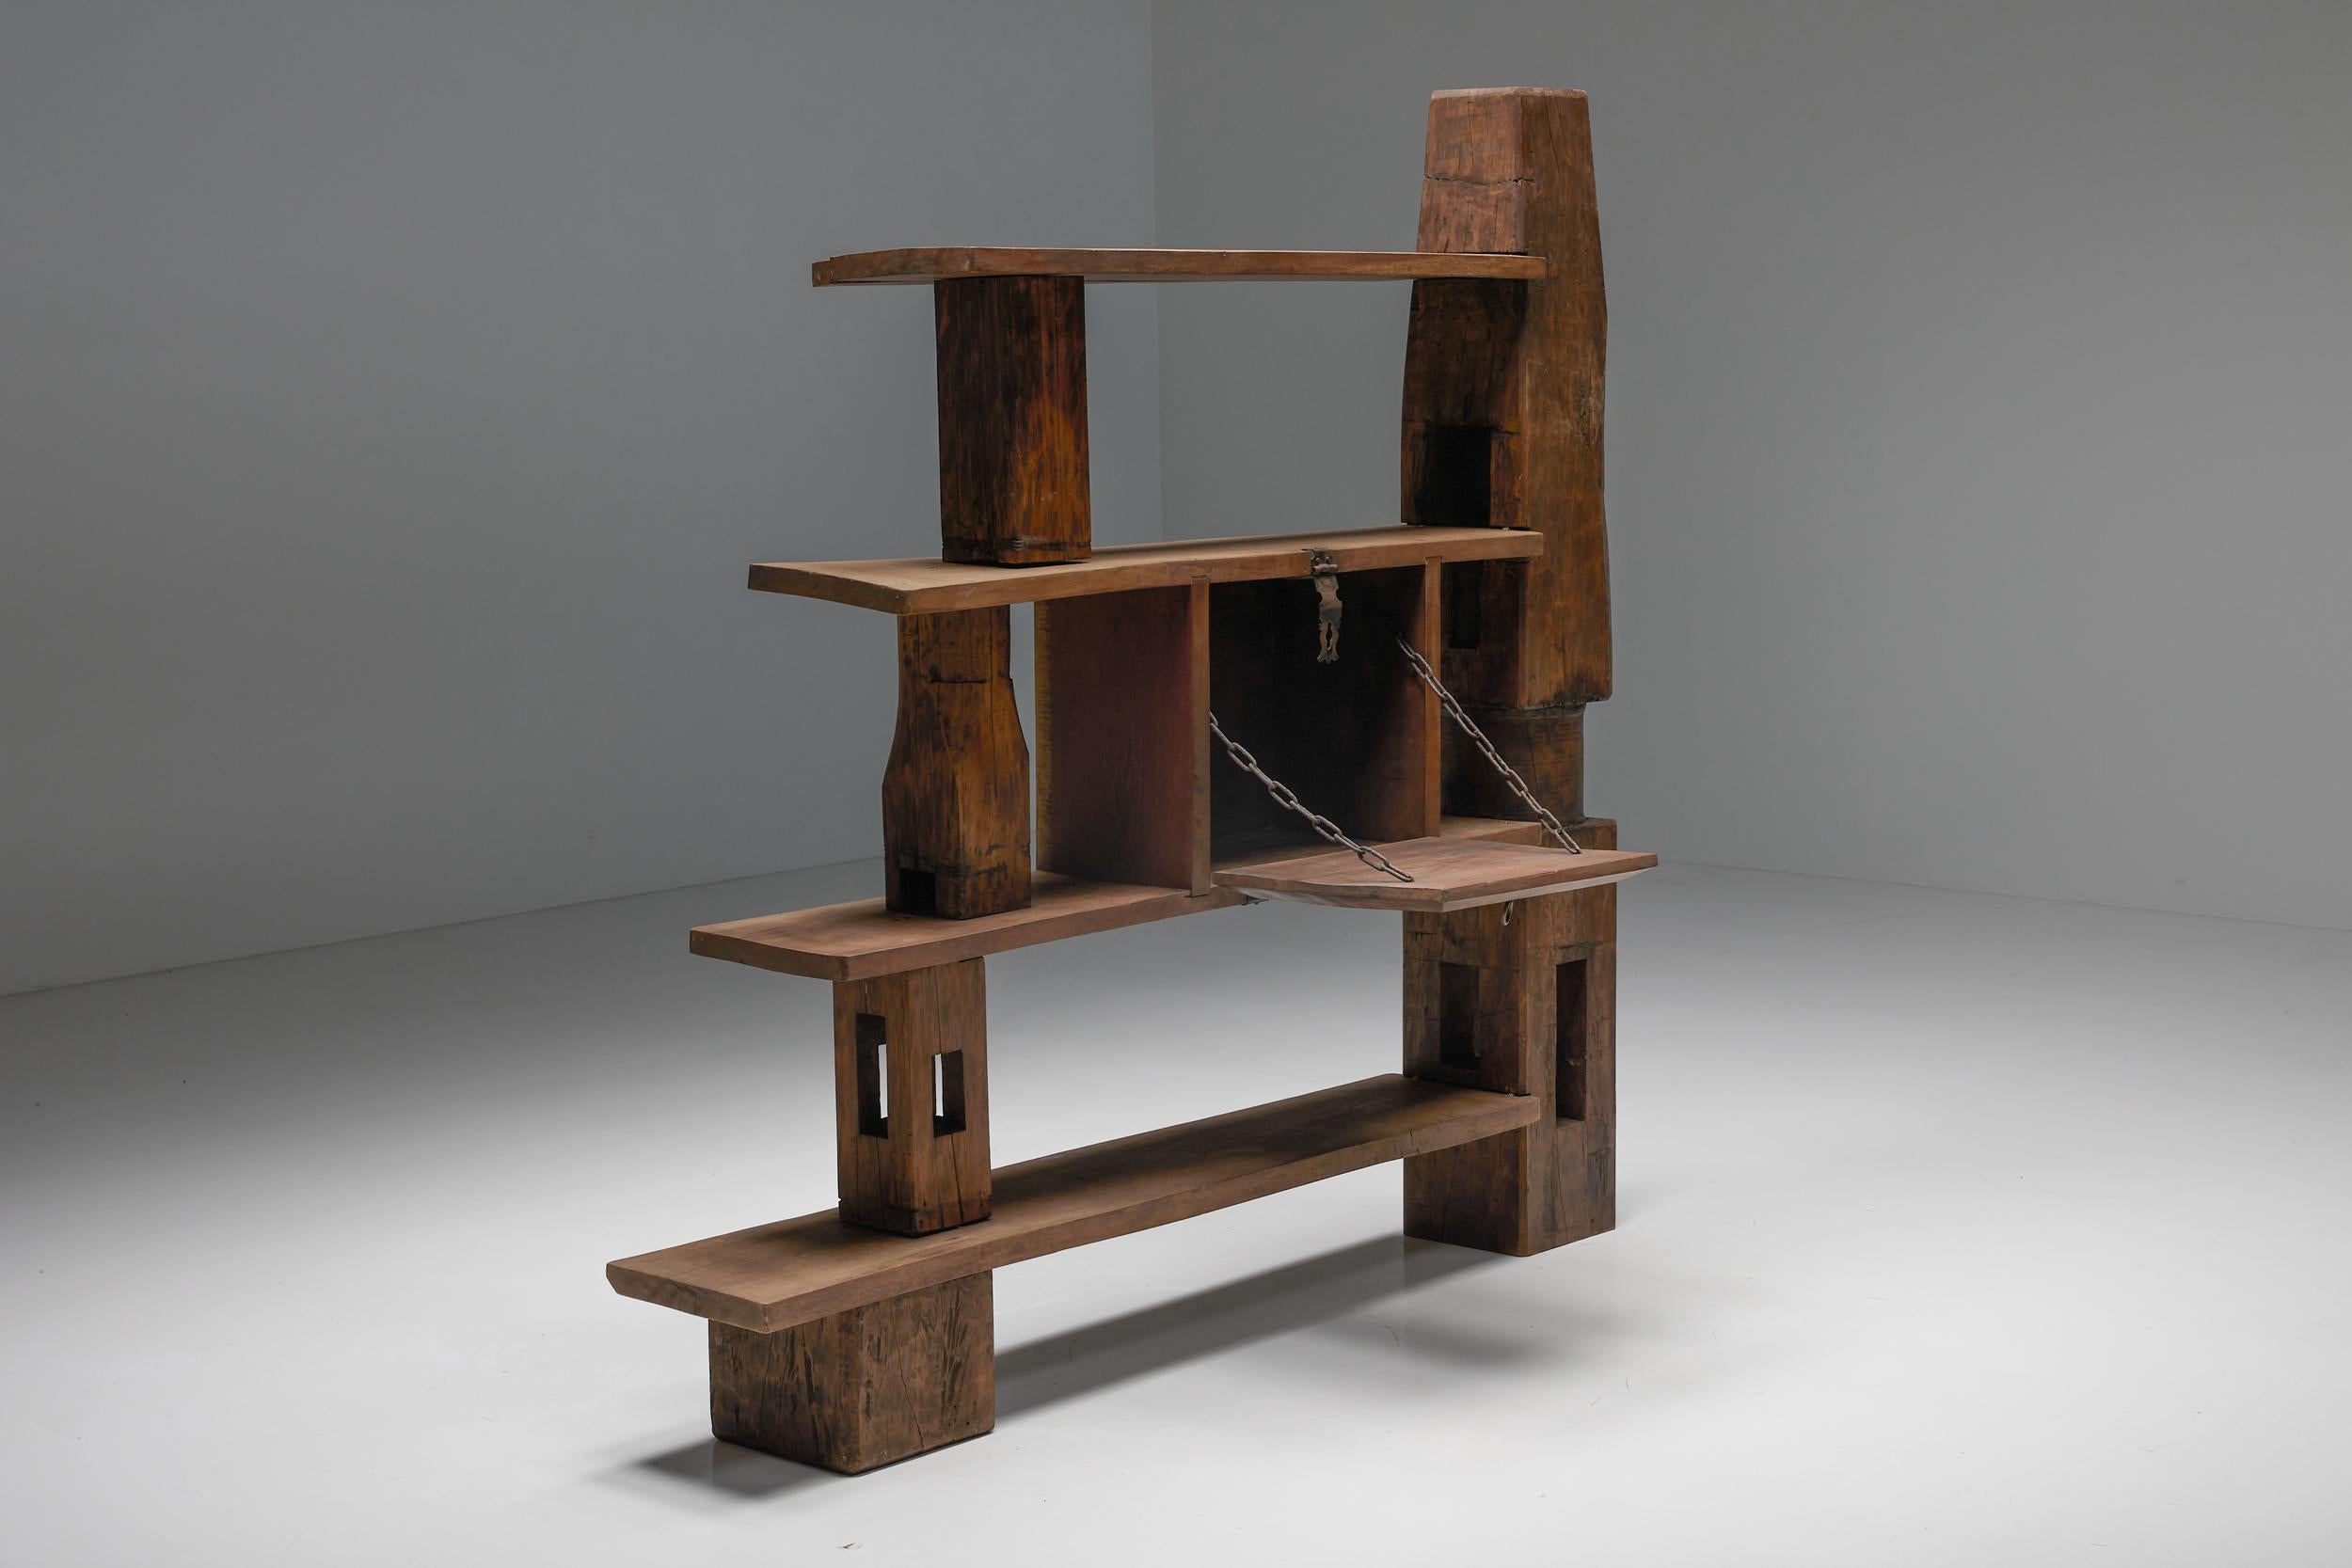 Kunsthandwerkliches Bücherregal, asymmetrischer Raumteiler aus Holz, 1950er Jahre (Mitte des 20. Jahrhunderts)